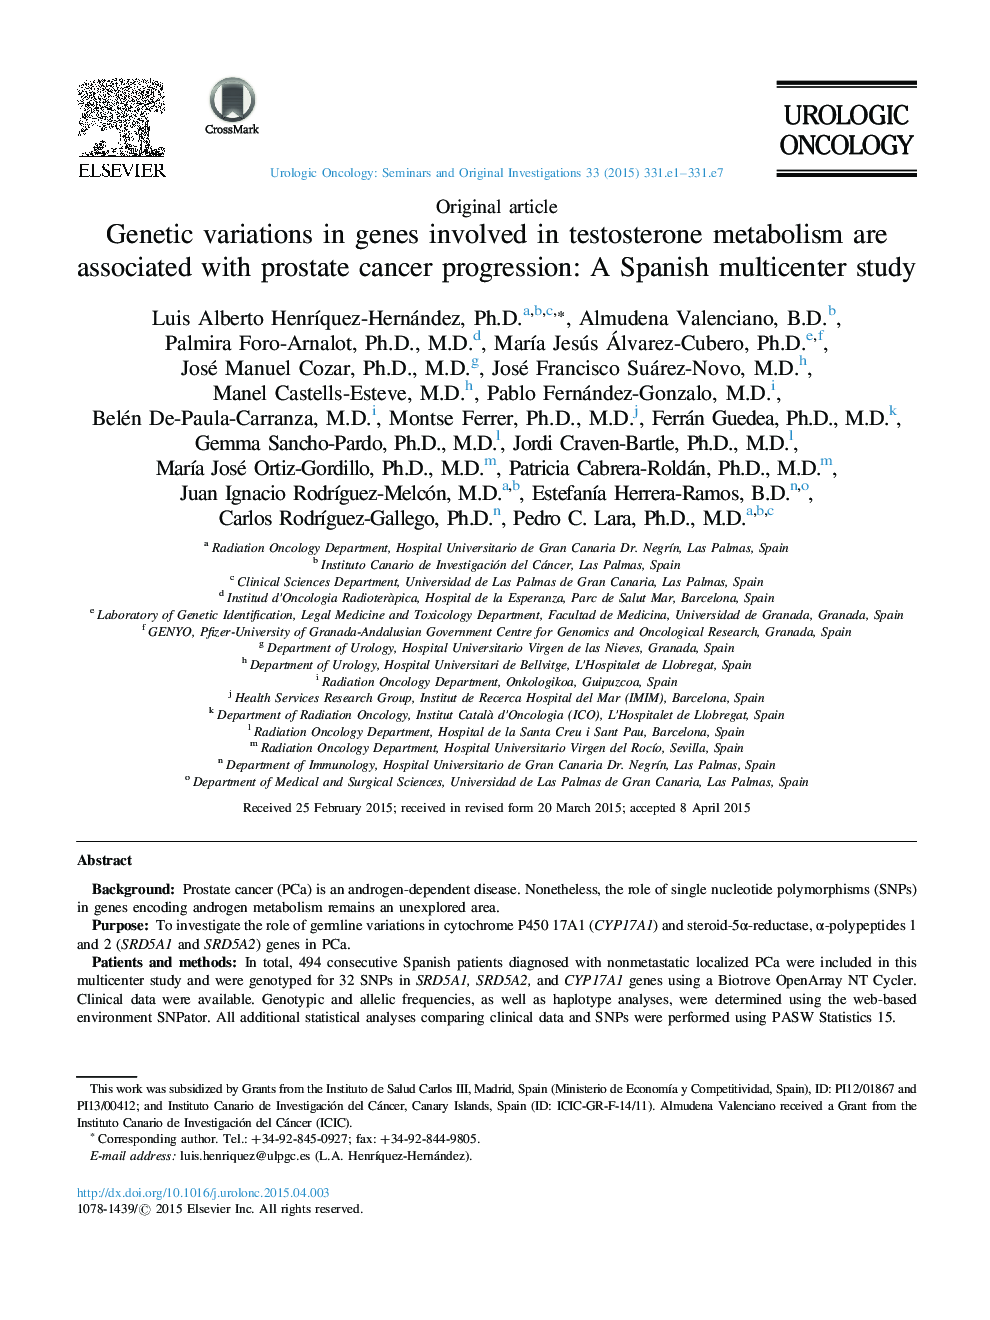 تنوع ژنتیکی در ژن های متابولیسم تستوسترون با پیشرفت سرطان پروستات همراه است: مطالعه چند کانونی اسپانیایی 